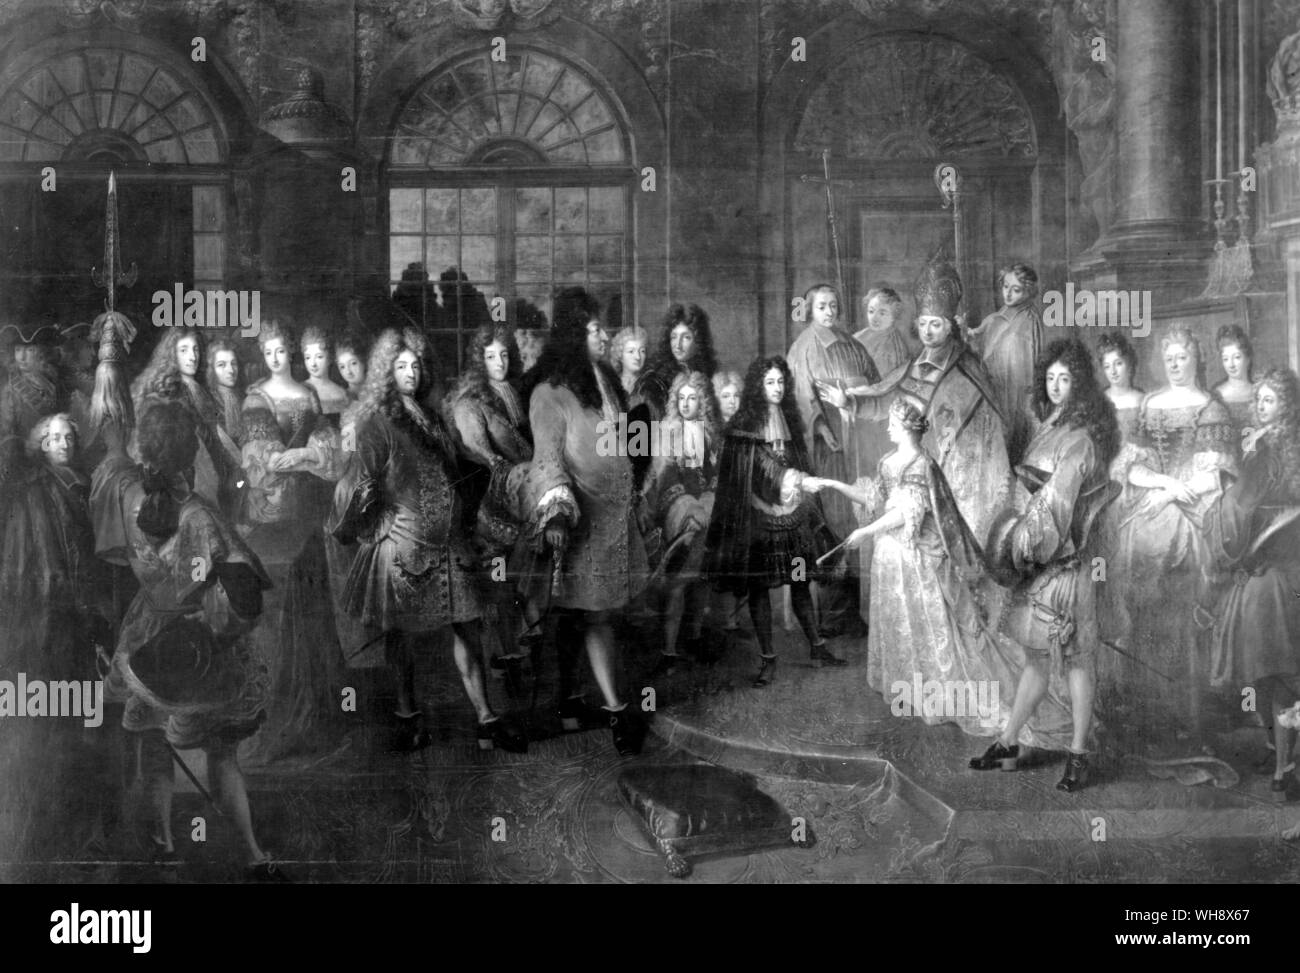 Ehe der Duc De Bourgogne und Prinzessin Marie-Adelaide von Savoyen, 7. Dezember 1697 von Antoine Dieu. Hinter dem Duc De Bourgogne sind die Ducs d'Anjou und Berry. Louis ist von einem Stick mit seinem Sohn, dem Grand Dauphin, unterstützt werden 4 Hind ihn. Auf der rechten Seite sind Monsieur, mit seinem Sohn die Duc de Chartres und die Herzogin von Orleans und Chartres. Stockfoto